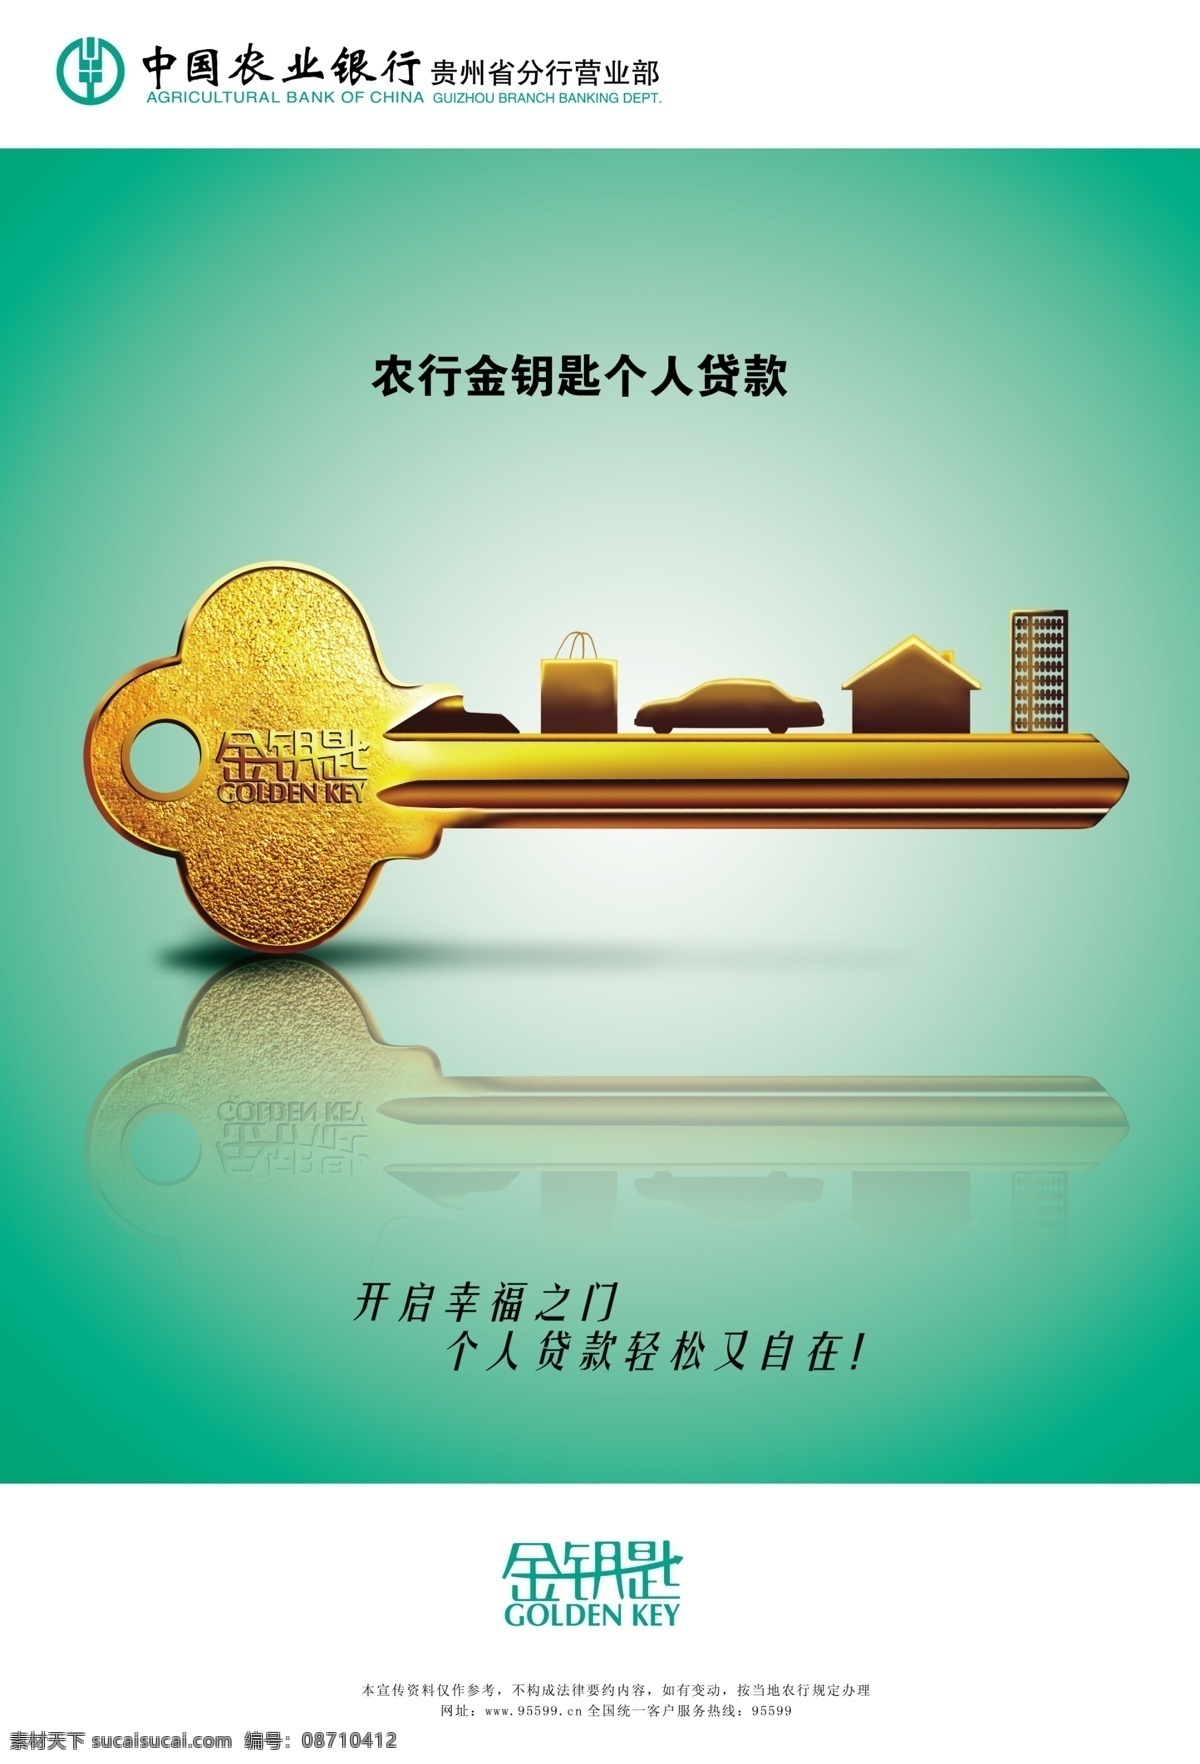 金钥匙 广告设计模板 理财 农行 农业银行 银行 源文件 钥匙 创意钥匙 矢量图 日常生活